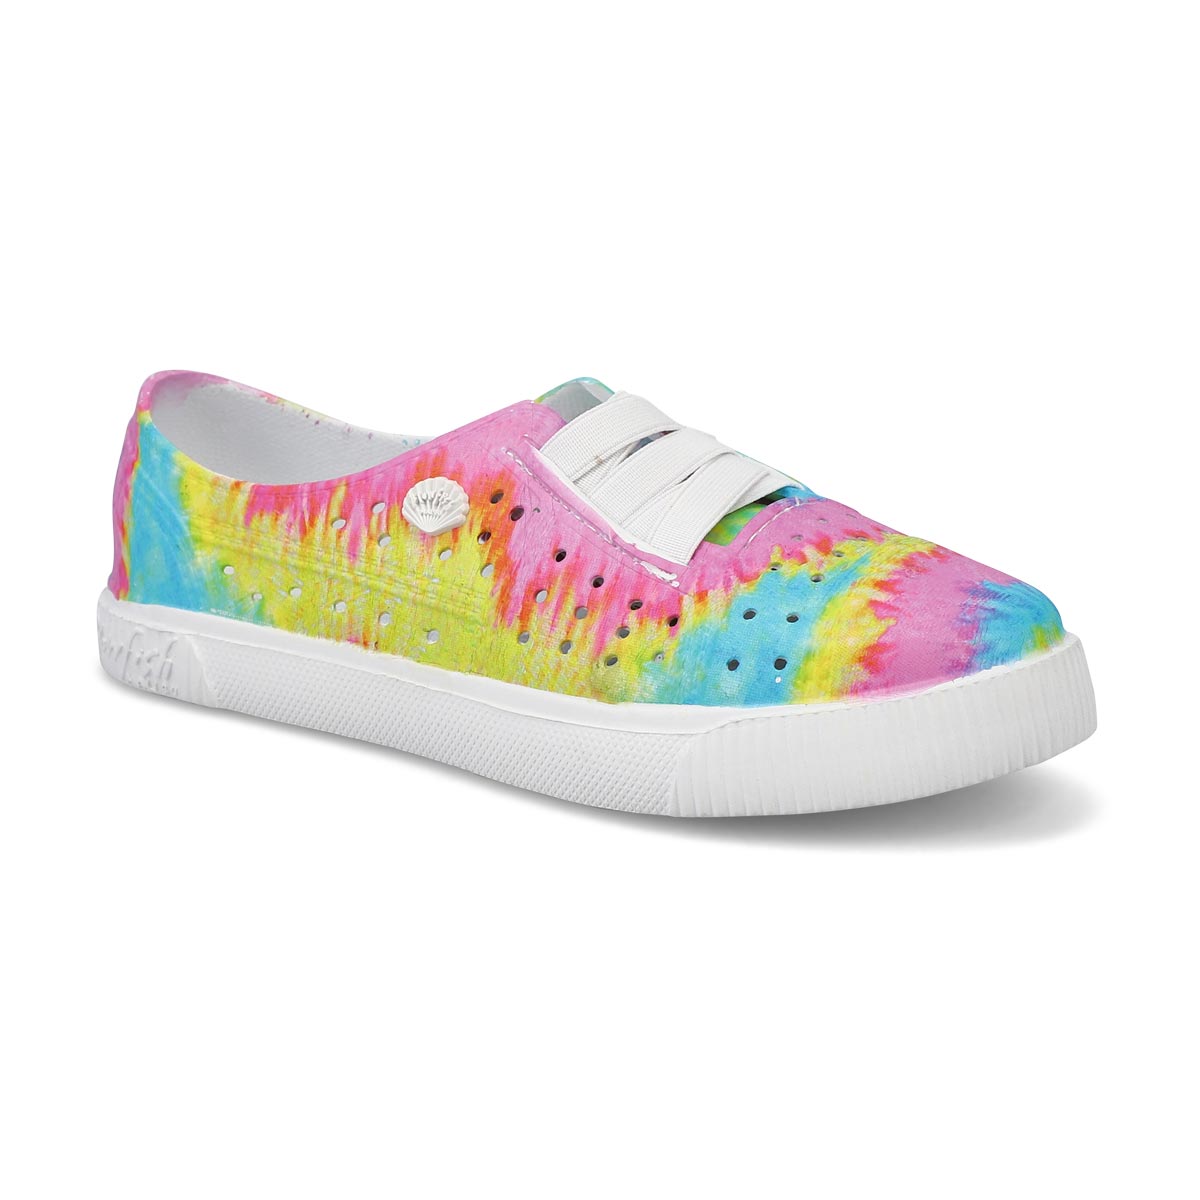 Girls' Rioo Sneakers - Pasteltie Dye